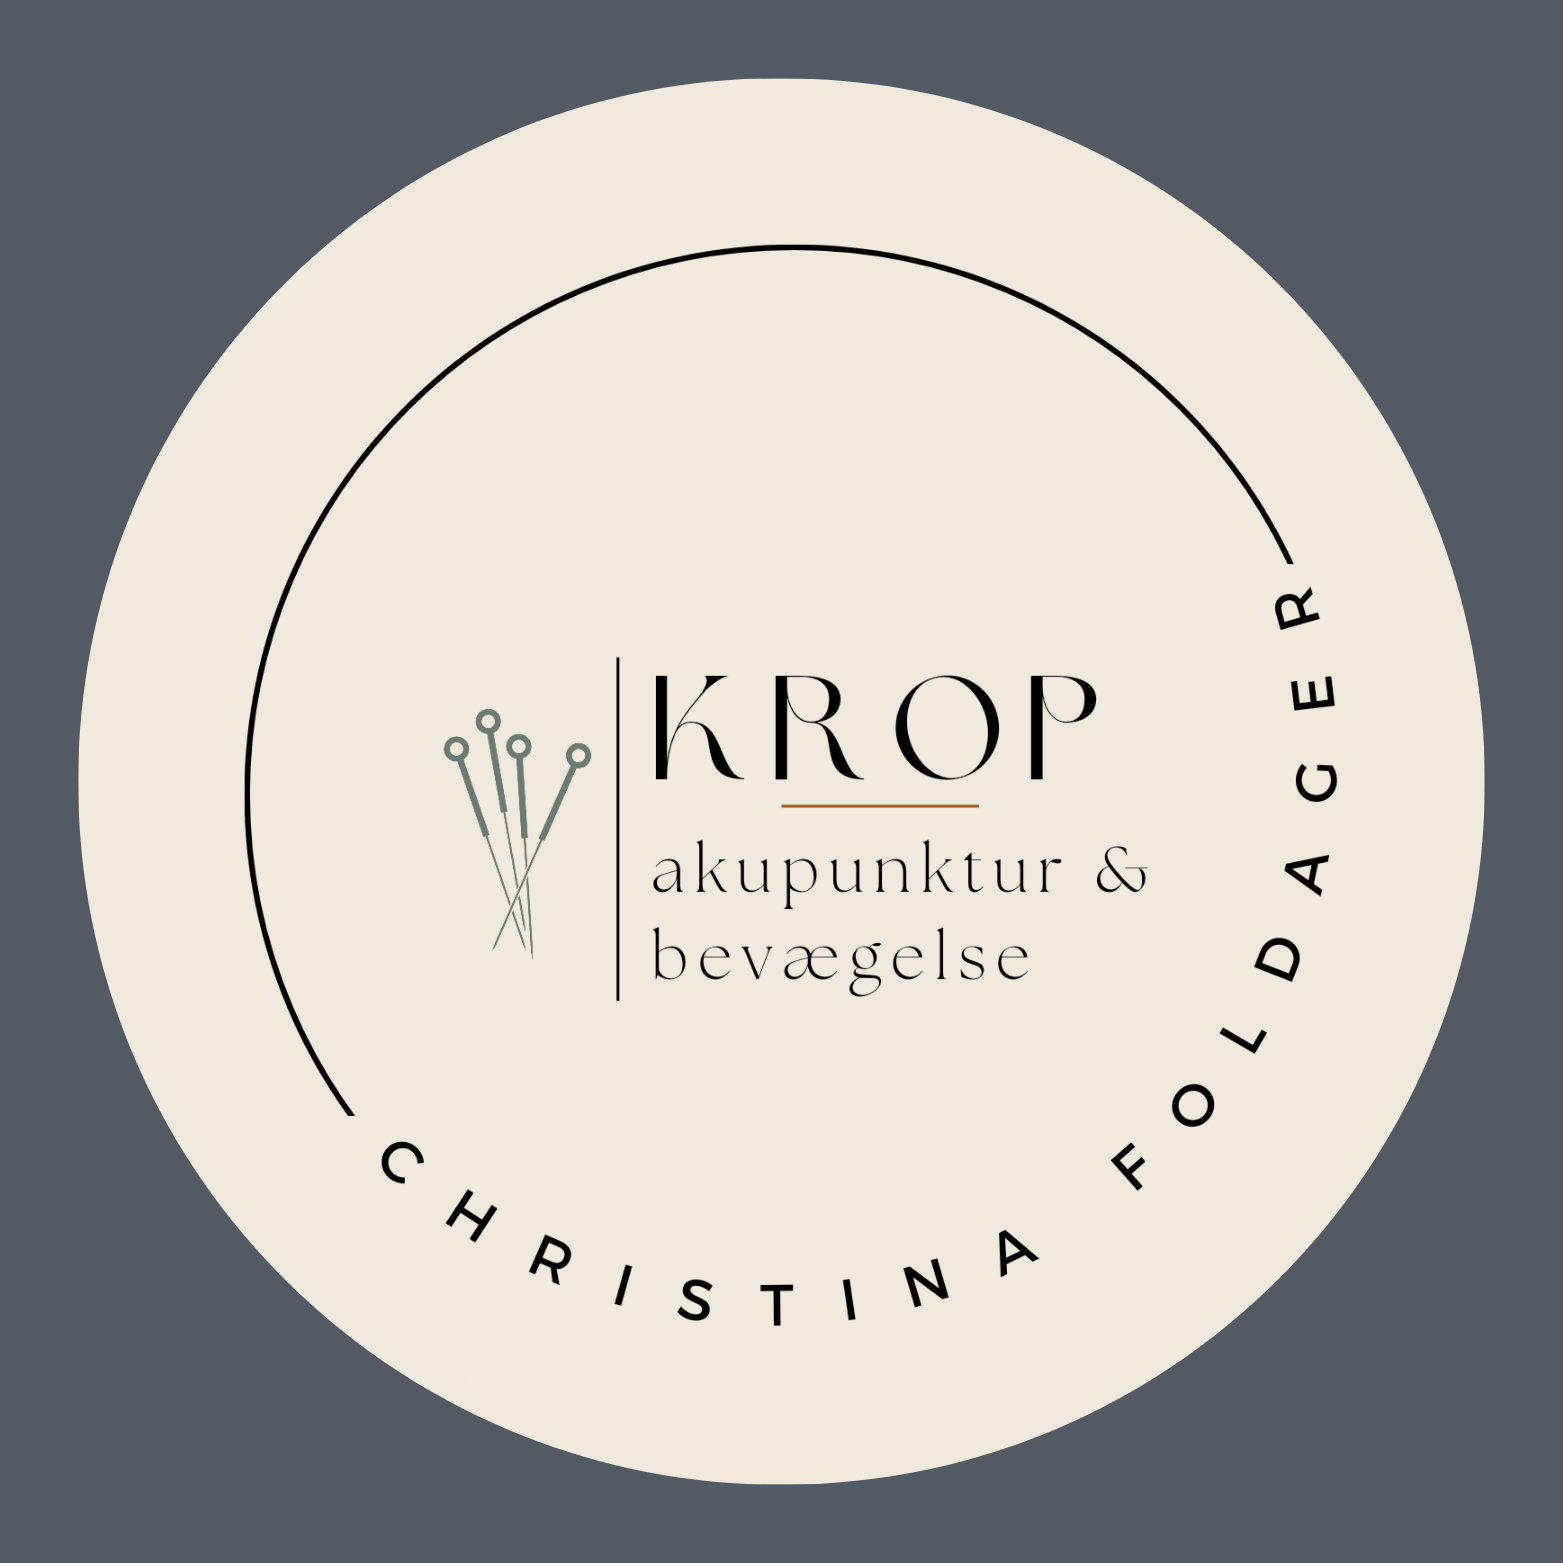 Krop Ro Akupunktur og bevægelse ved Christina Foldager -